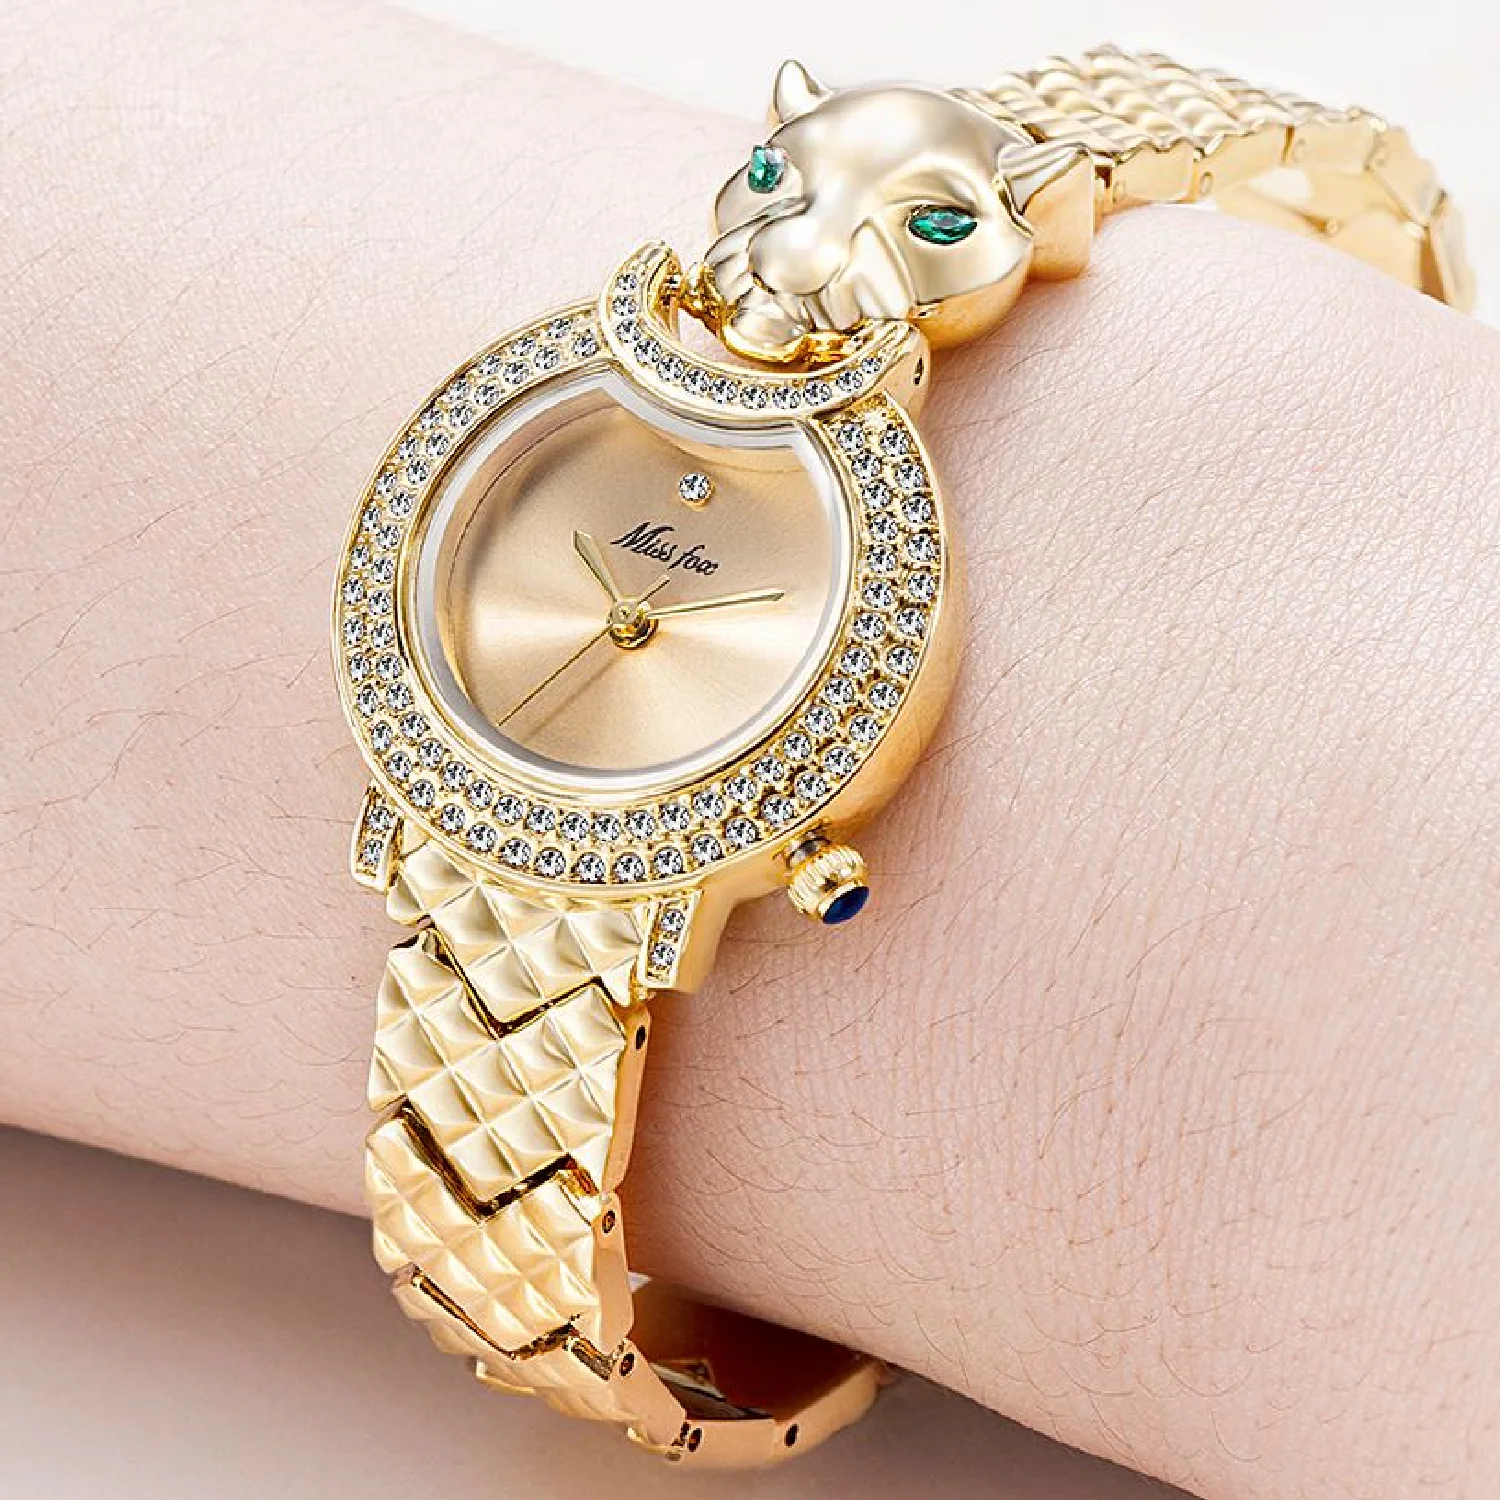 Leopard Watch for Women Green Diamond Eyes Steel Bracelet Fashion Watch Female Top Luxury Watches Ladies Jewelry Reloj Mujer